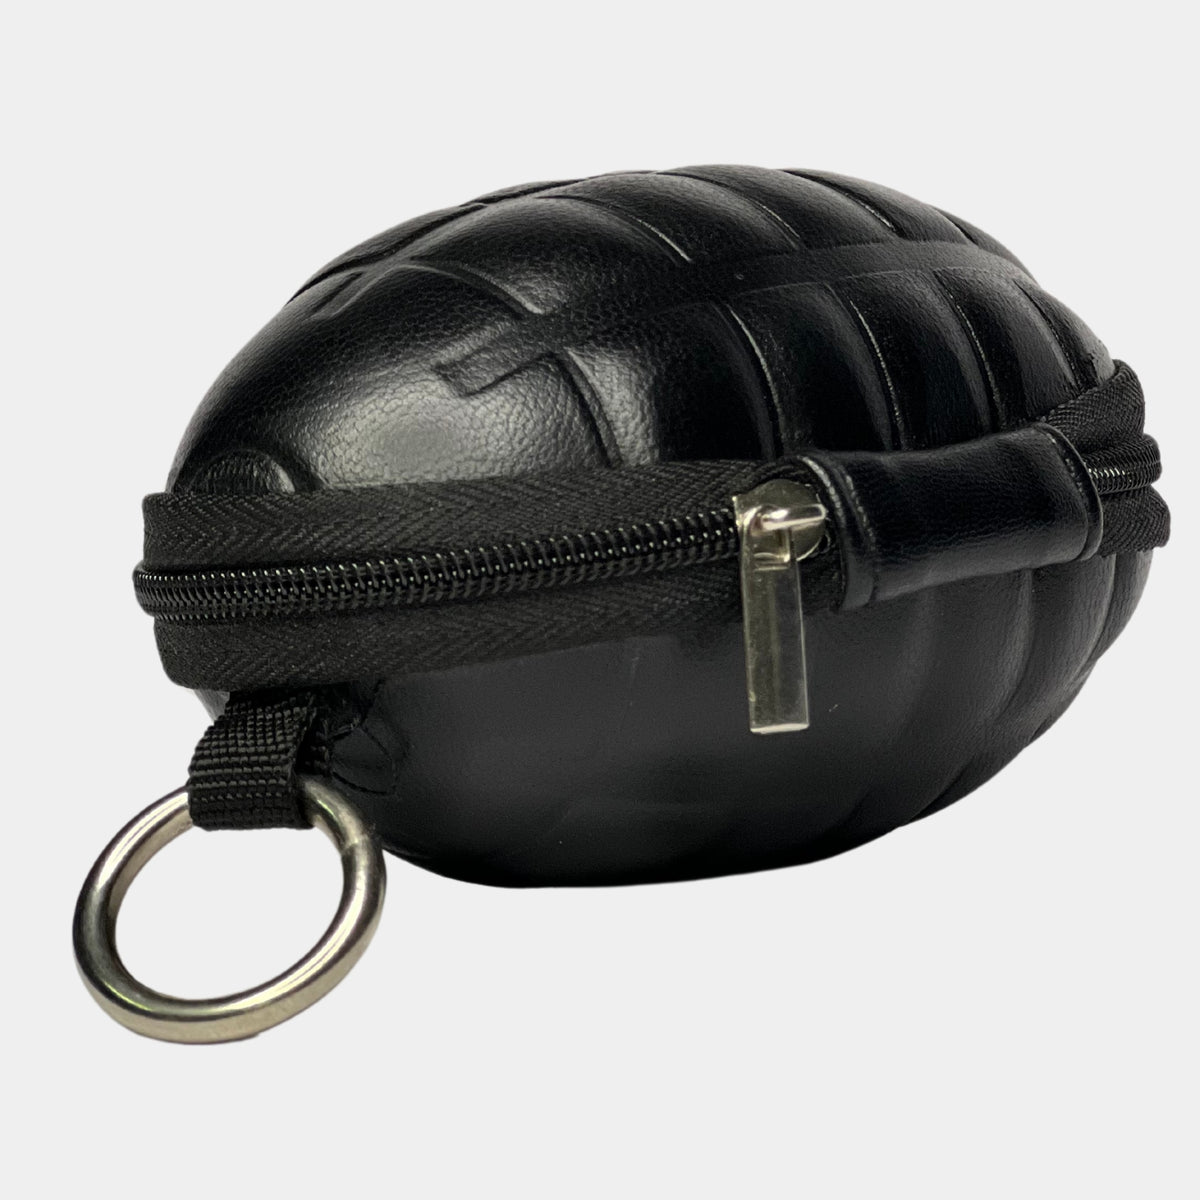 Grenade Shape EarPods Case - Grenade Shape Keychain Holder